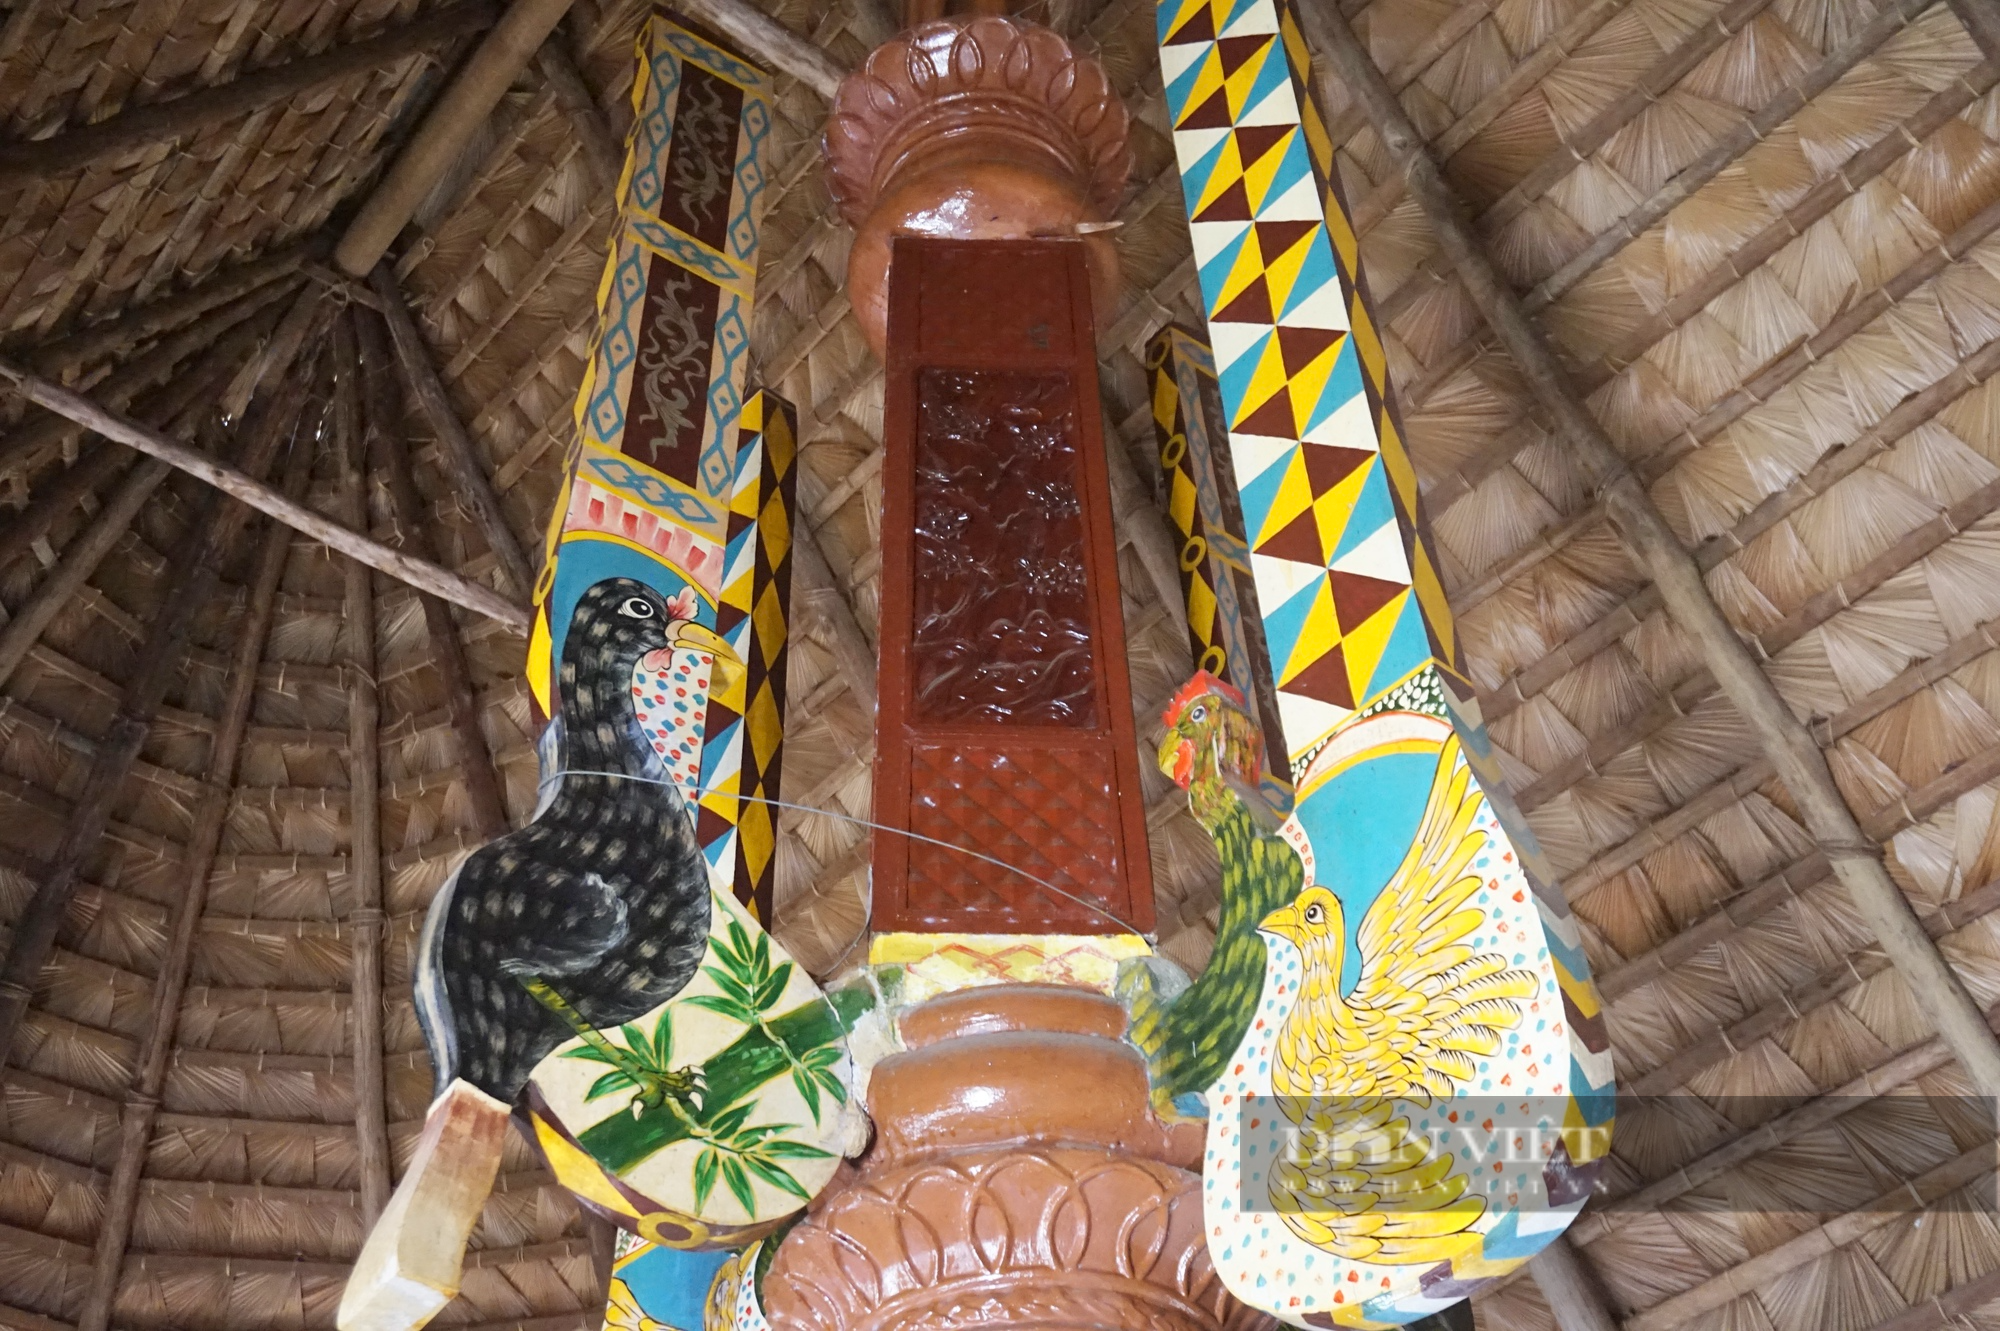 Đà Nẵng: Giữ gìn và phát huy bản sắc văn hoá dân tộc, người Cơ Tu “hái ra tiền” từ du lịch cộng đồng - Ảnh 7.